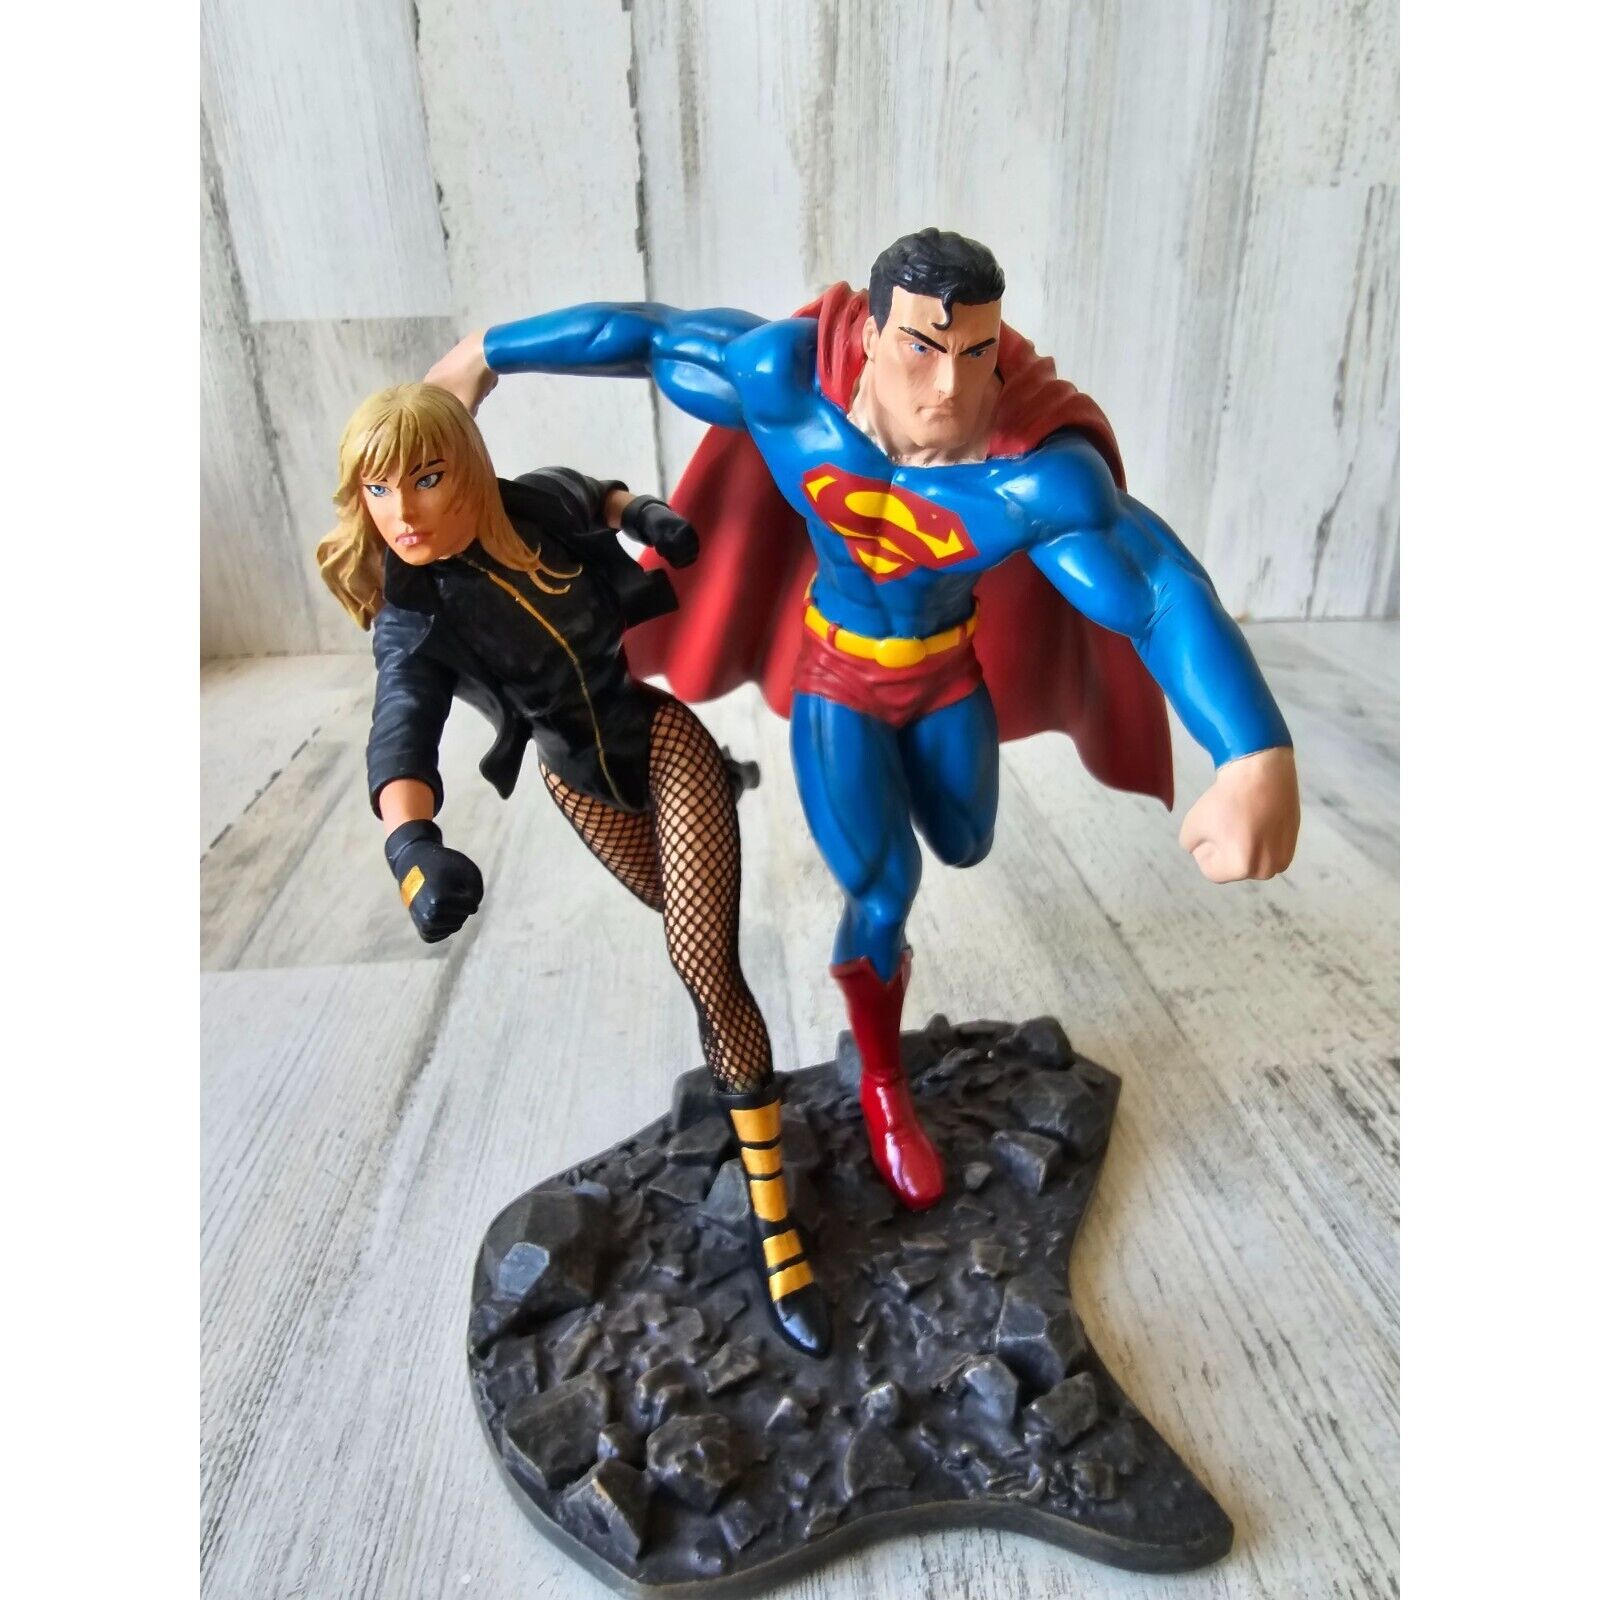 Superman Justice League America DC 2008 statue part 2 build scene figurine